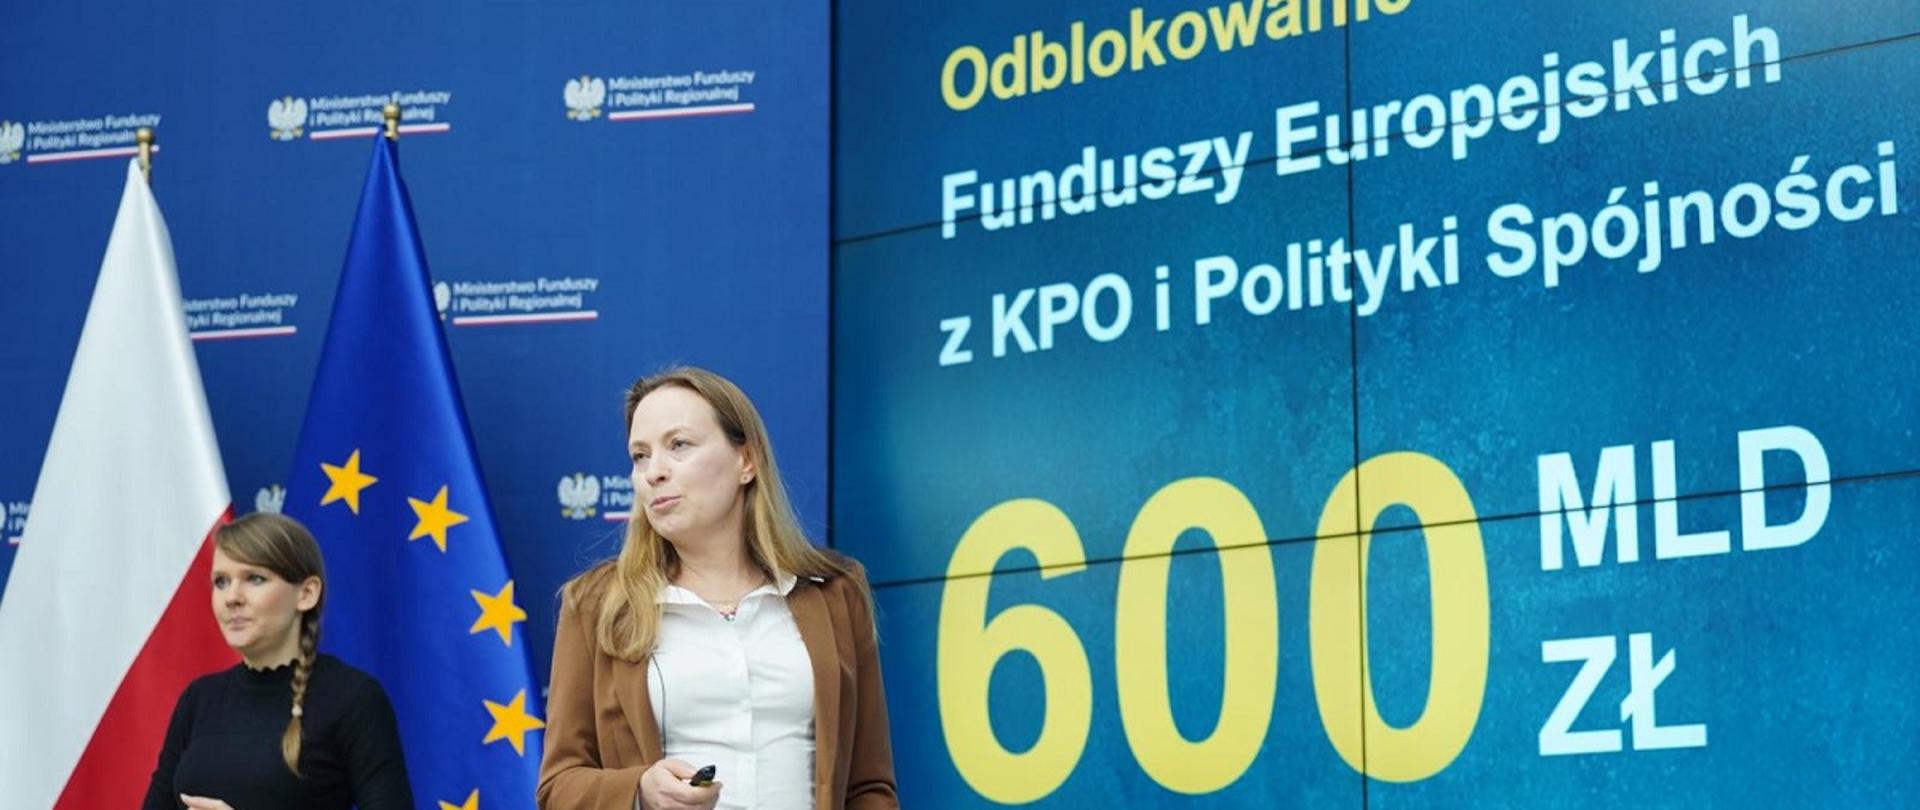 Minister funduszy i polityki regionalnej Katarzyna Pełczyńska-Nałęcz stoi na tle grafiki informującej o odblokowaniu Funduszy Europejskich z KPO i Polityki Spójności